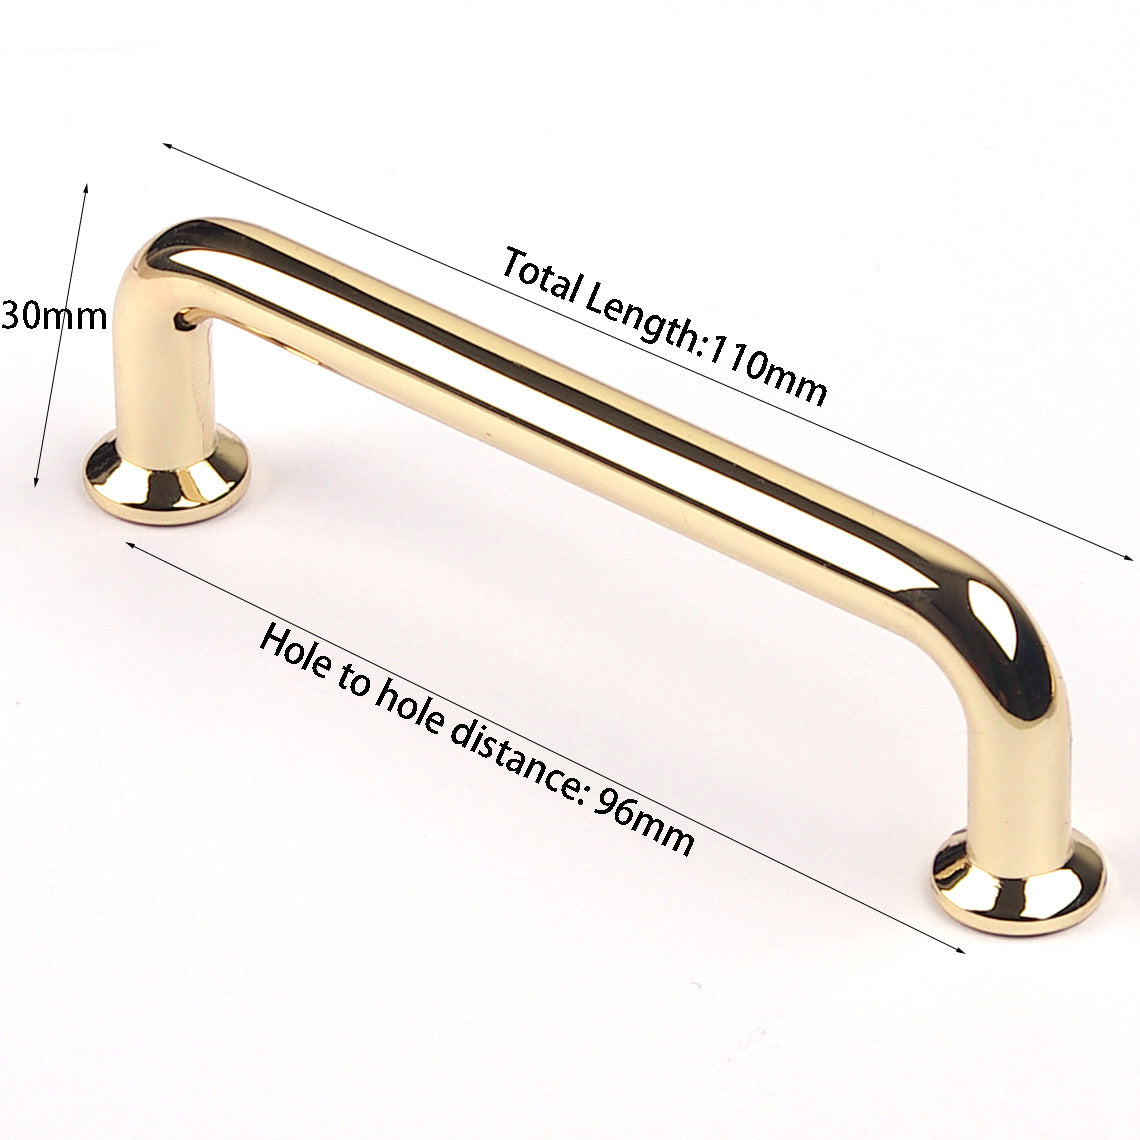 96mm Polished gold Furniture Kitchen Bathroom Cabinet Handles Drawer Bar Handle Pull Knob - 0